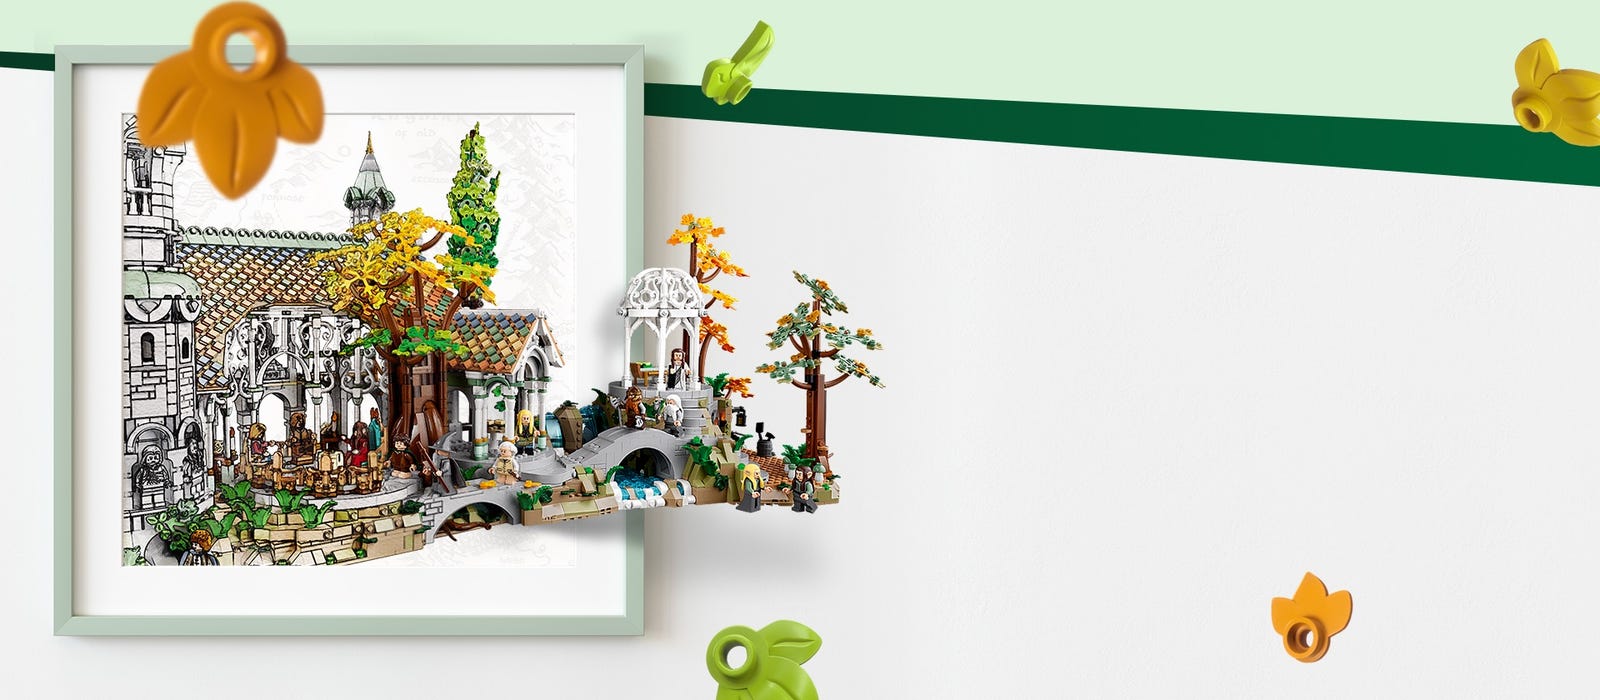 Le Seigneur des Anneaux : la boîte LEGO Fondcombe est enfin disponible ! -  Actus Ciné - AlloCiné